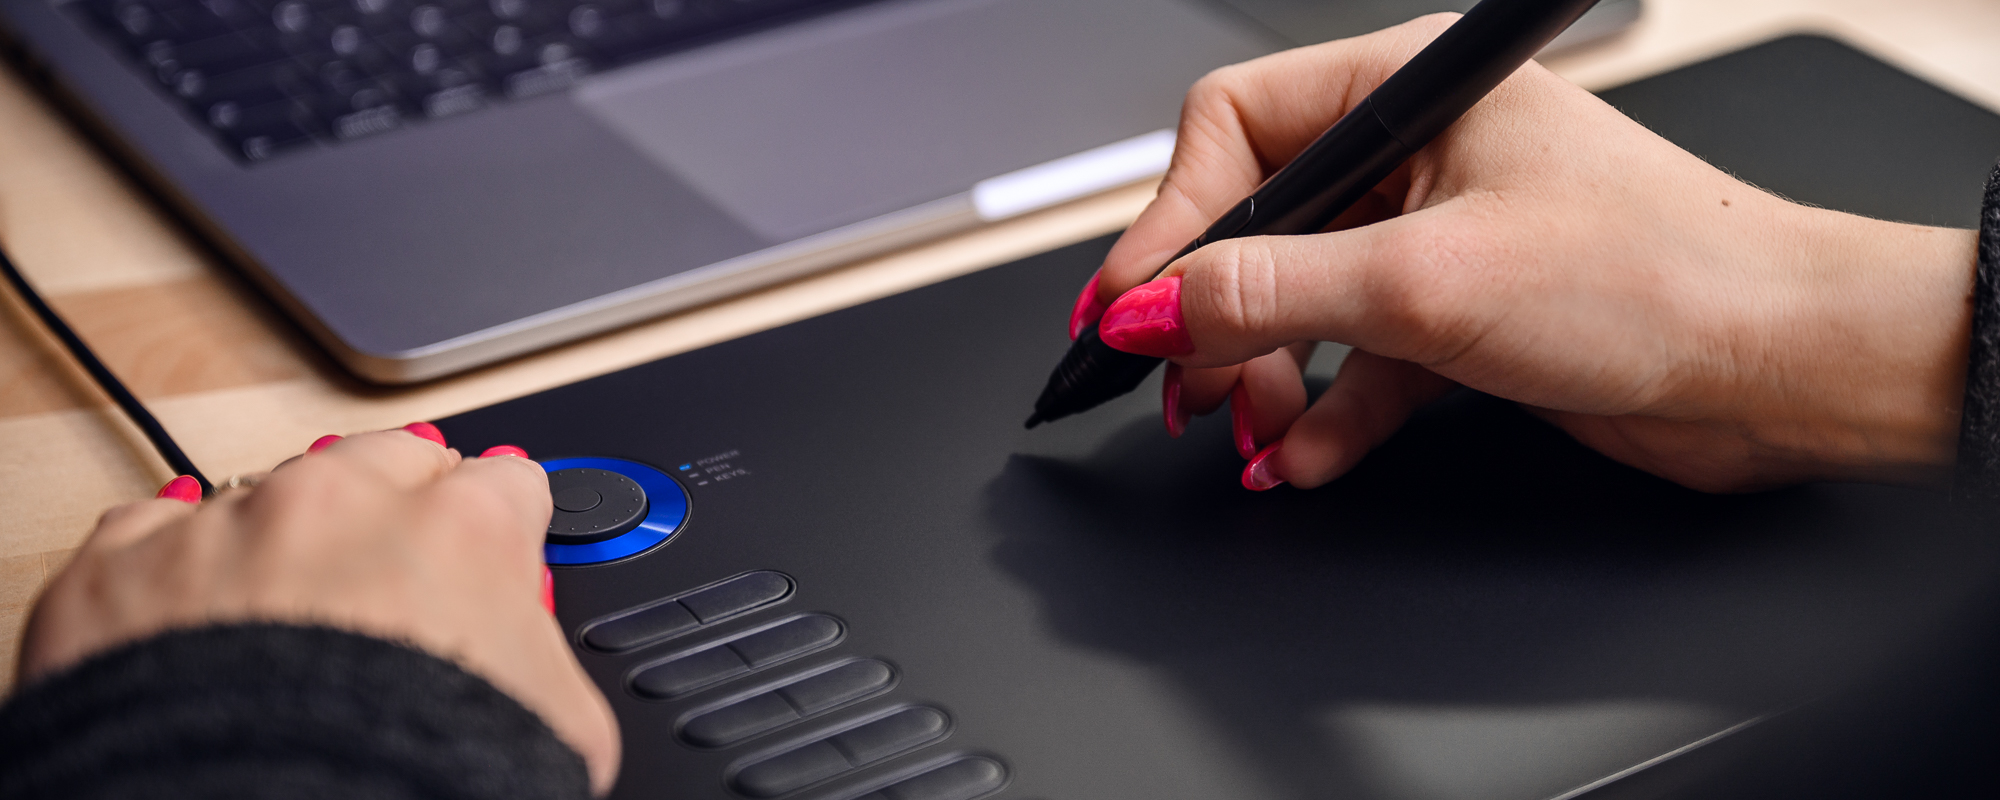 Foto - Veikk A15 Pro Grafiktablett auf hellbraunem Schreibtisch, die linke Hand der Frau drückt die Funktionstaste, die rechte Hand bedient den passiven Veikk-Stift